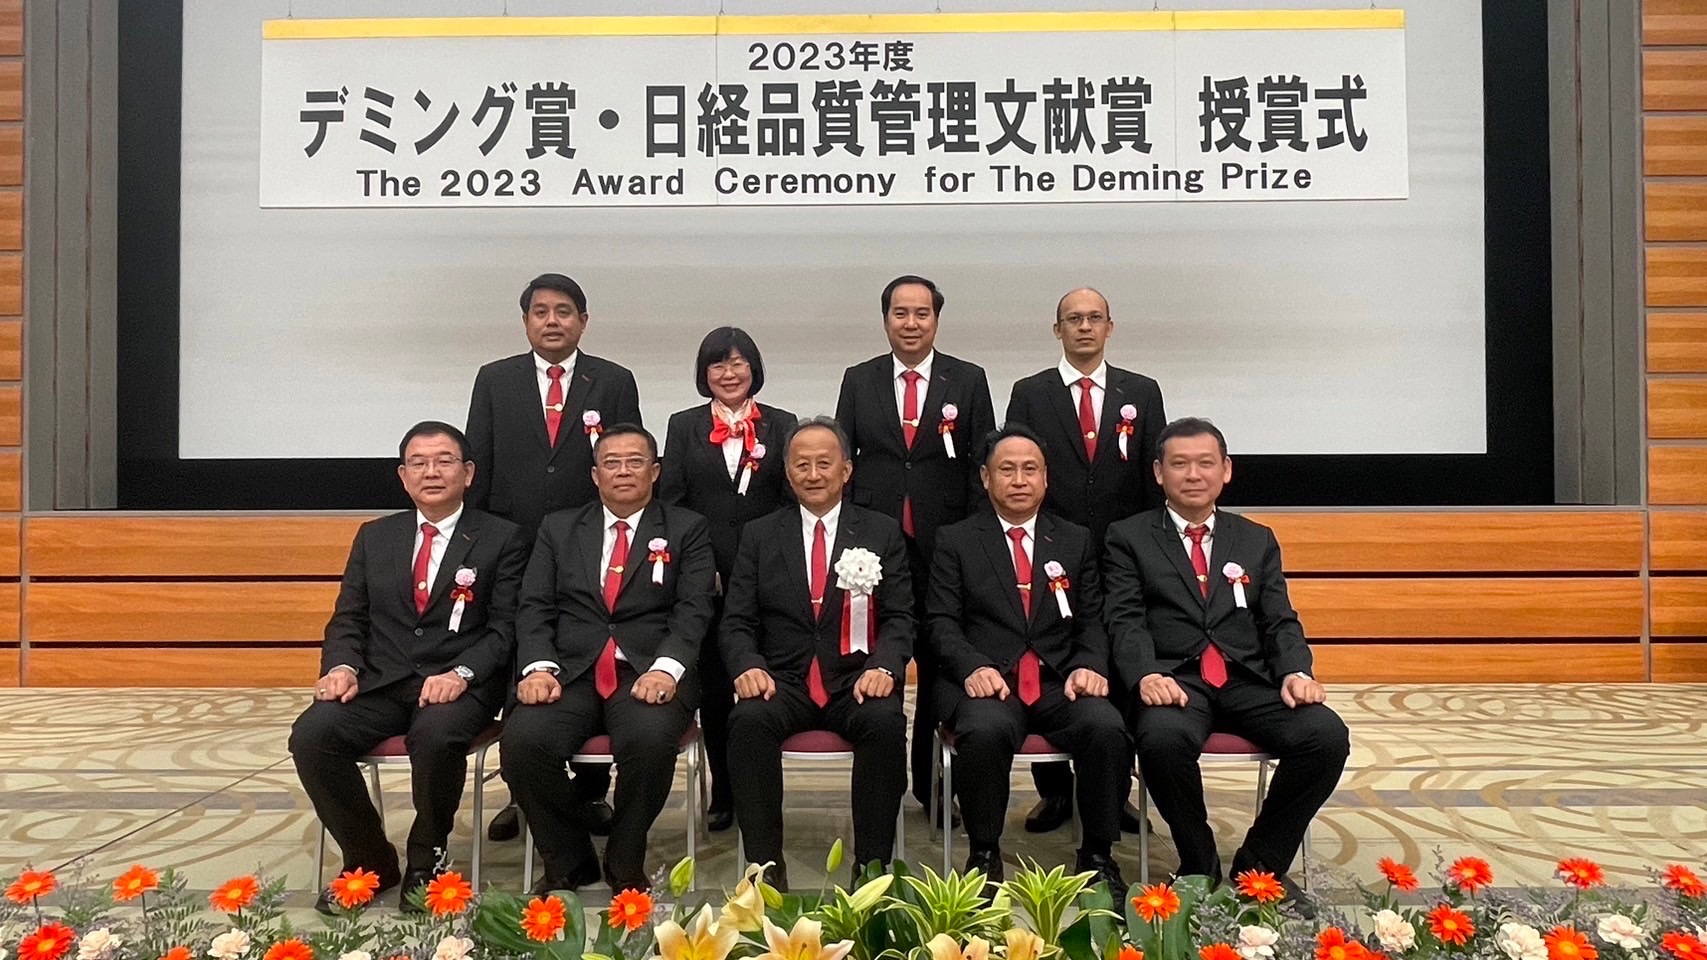 ซีพีแรม สร้างชื่อให้ไทย รับรางวัล The Deming Prize 2023 ญี่ปุ่นชี้ระบบจัดการยอดเยี่ยมมาตรฐานสูงระดับโลก ยกระดับอุตสาหกรรมอาหารของไทยสู่ชั้นแนวหน้าของโลกที่นานาชาติยอมรับ